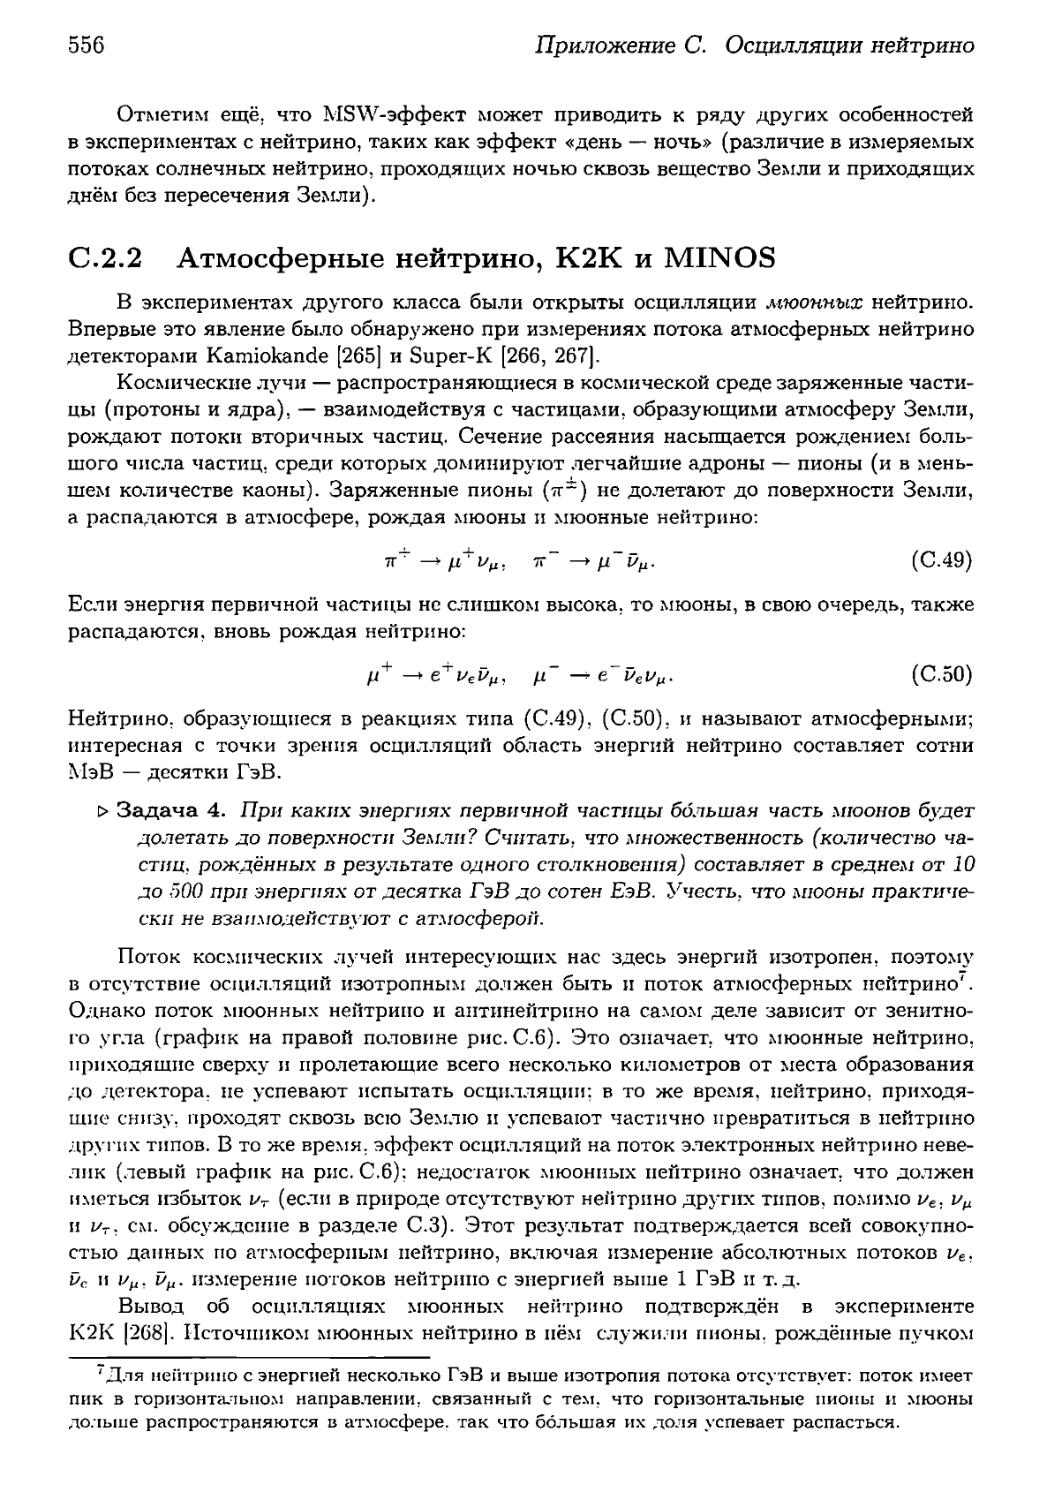 С.2.2. Атмосферные нейтрино, К2К и MINOS